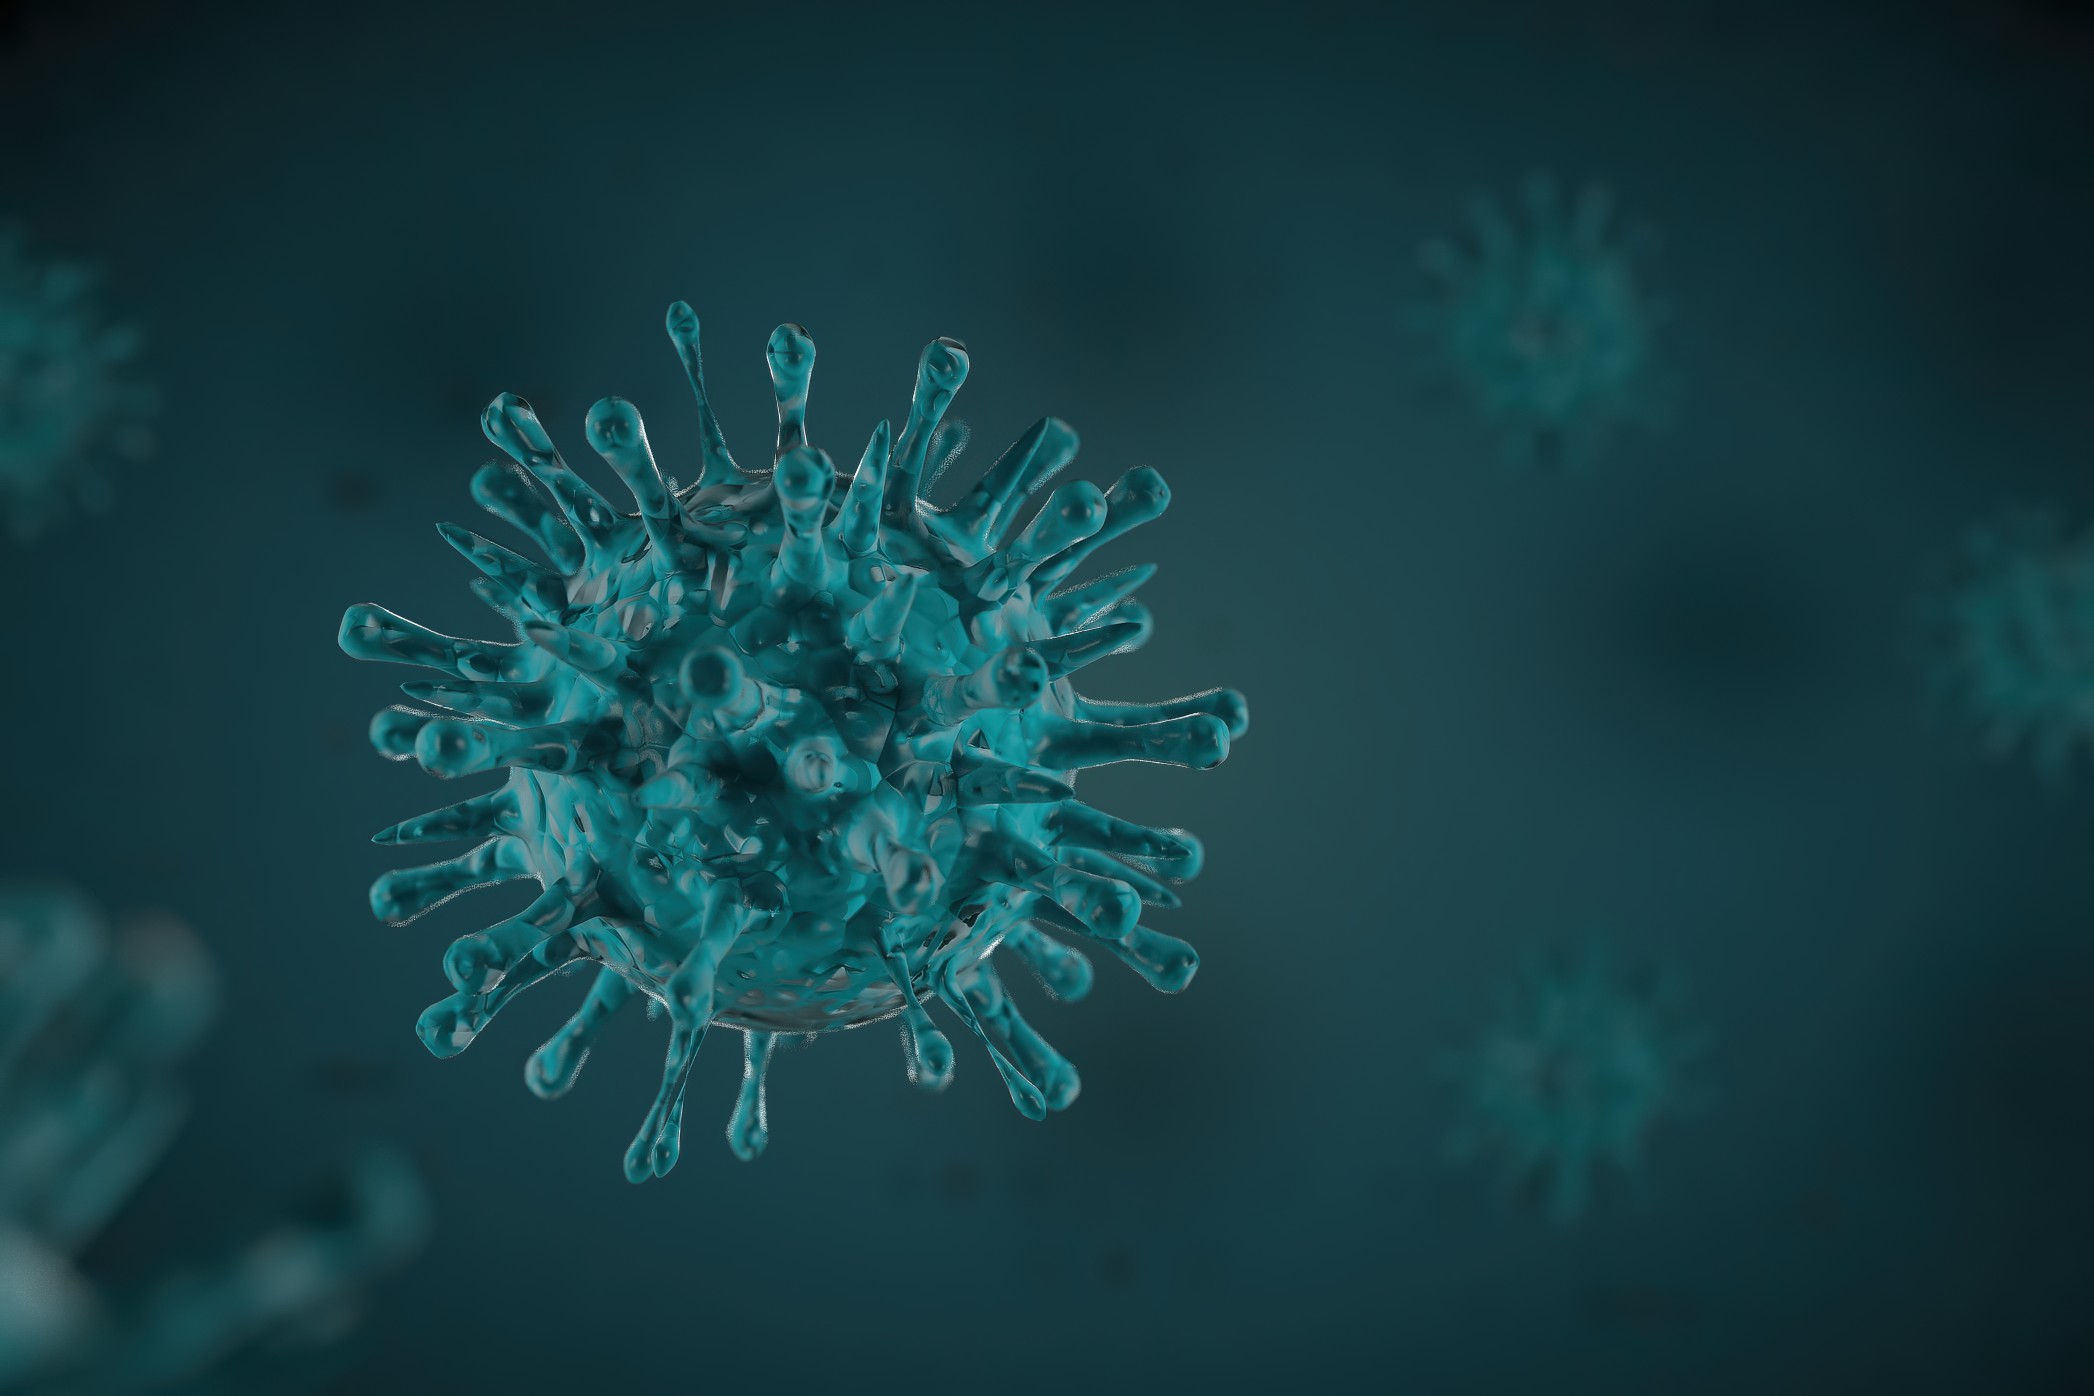 Influenza Virus